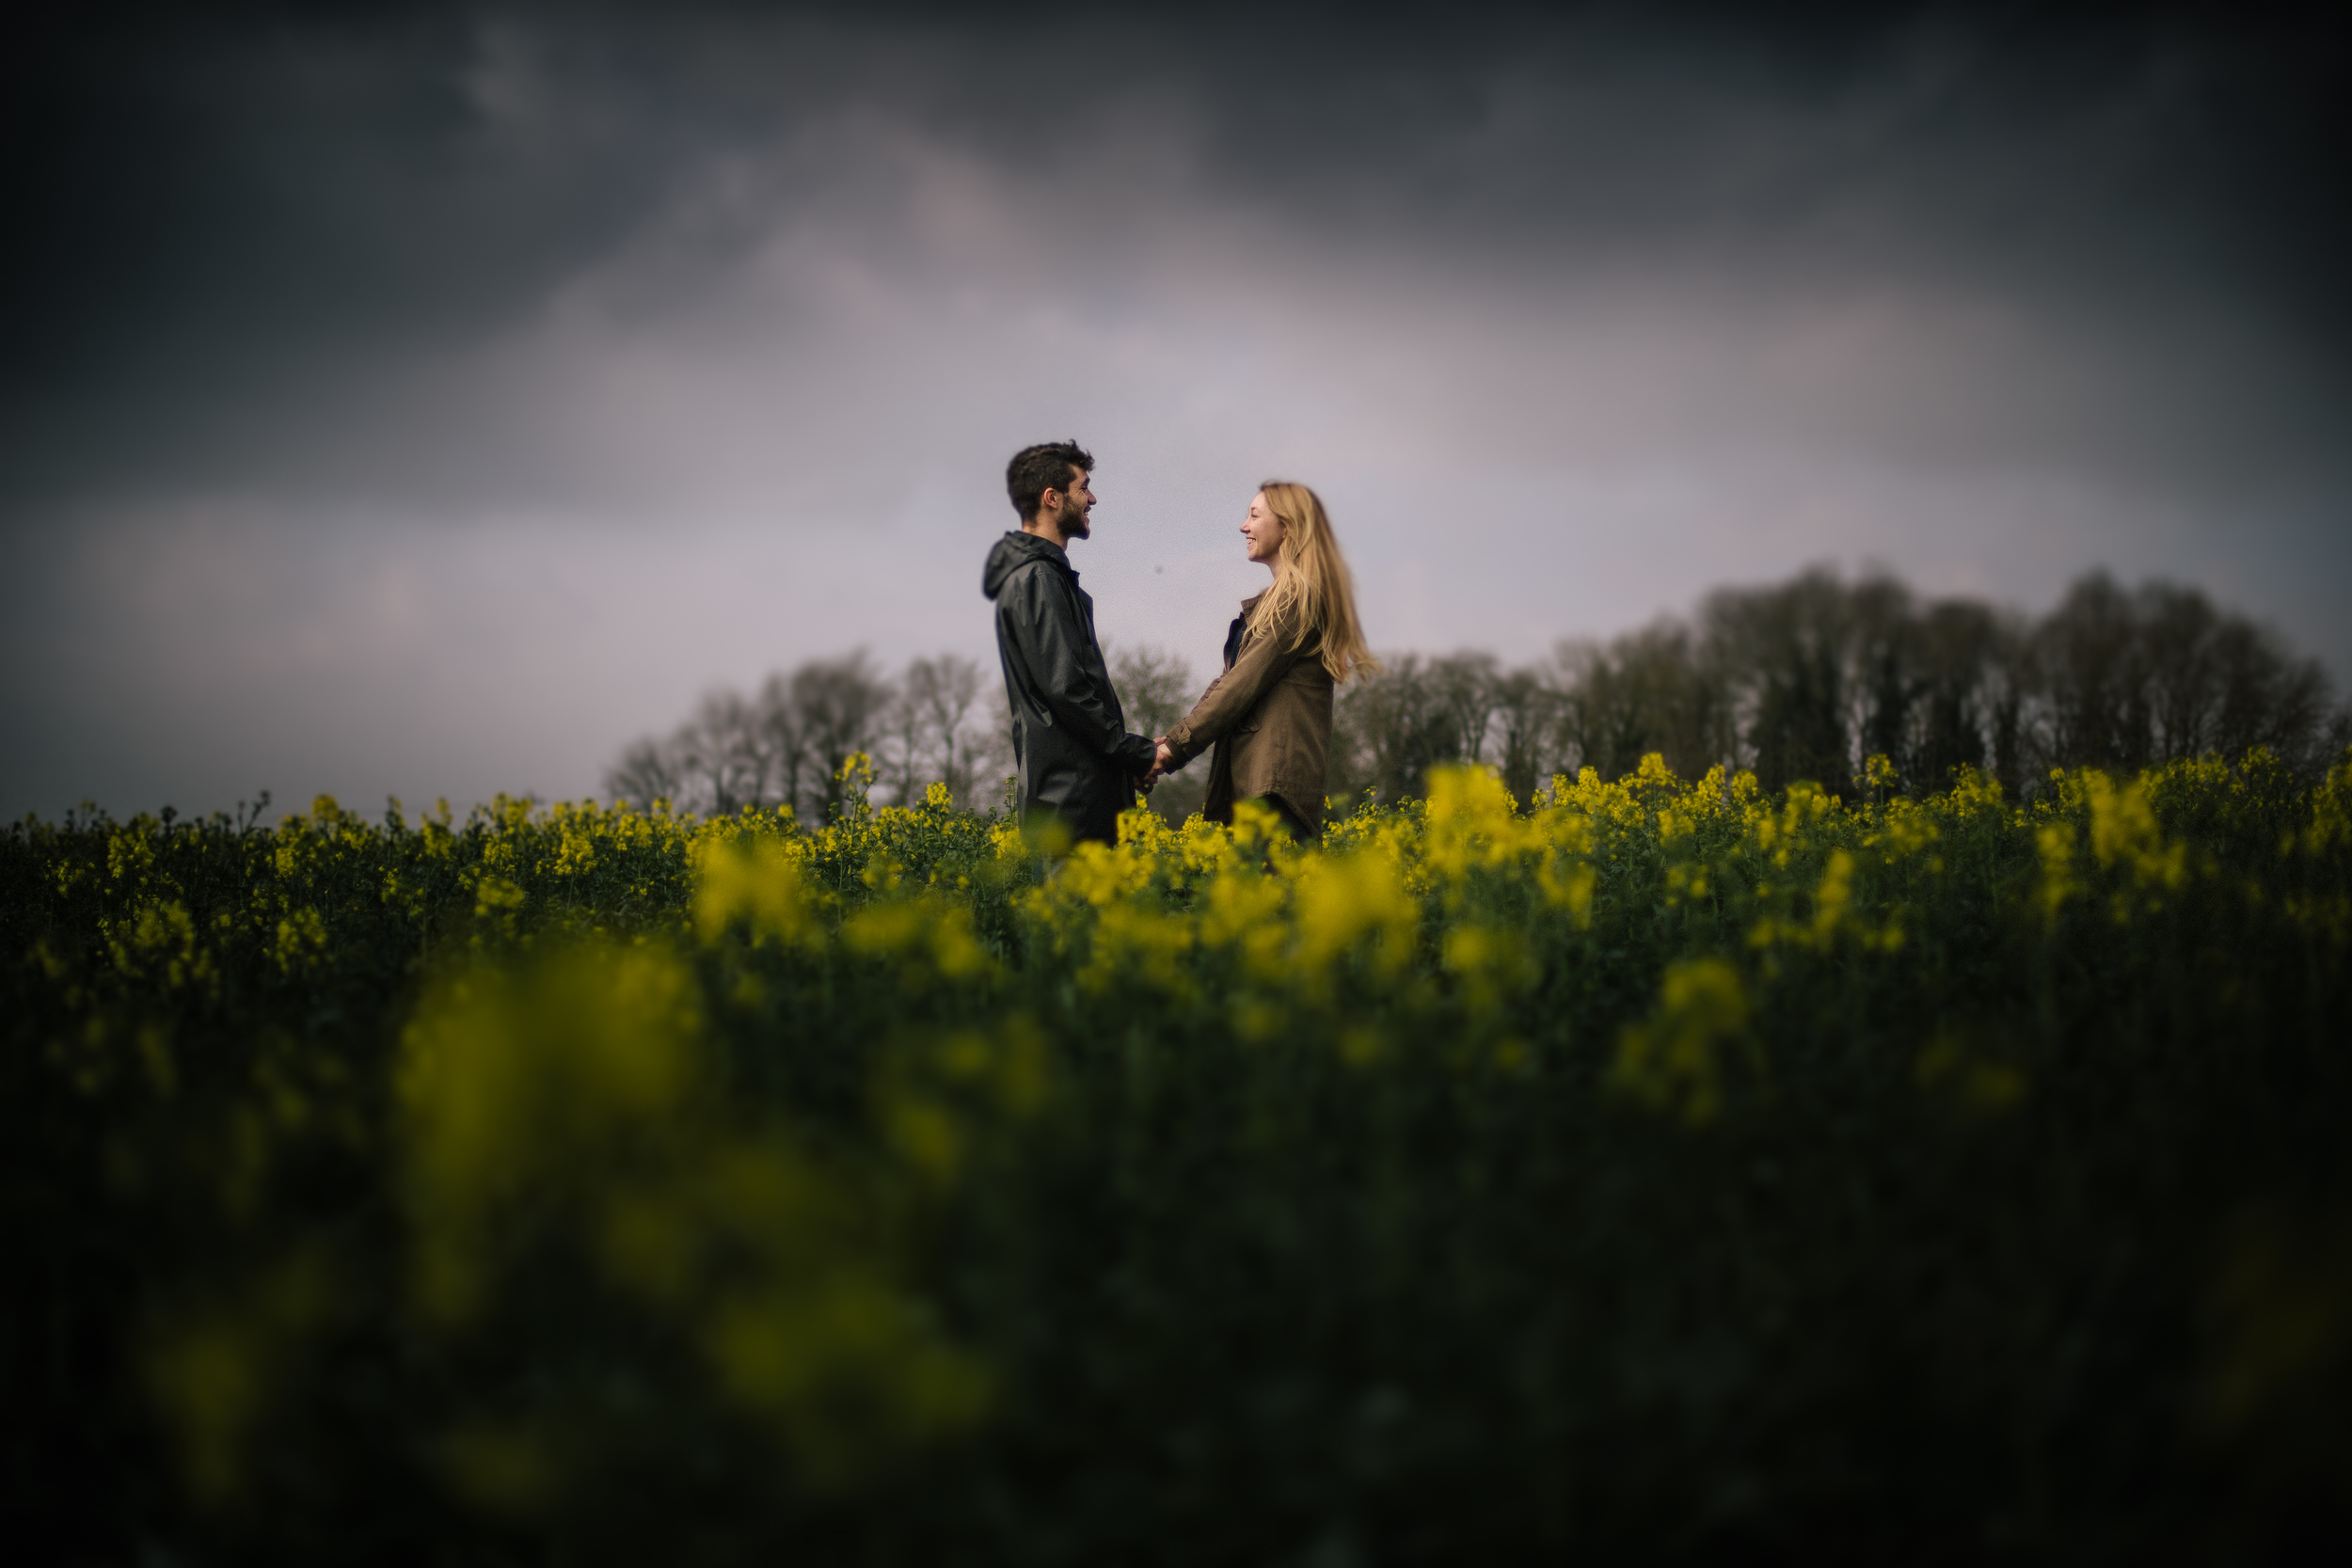 Pavenham-Bedfordshire-Engagement-Wedding-Photography-1.jpeg